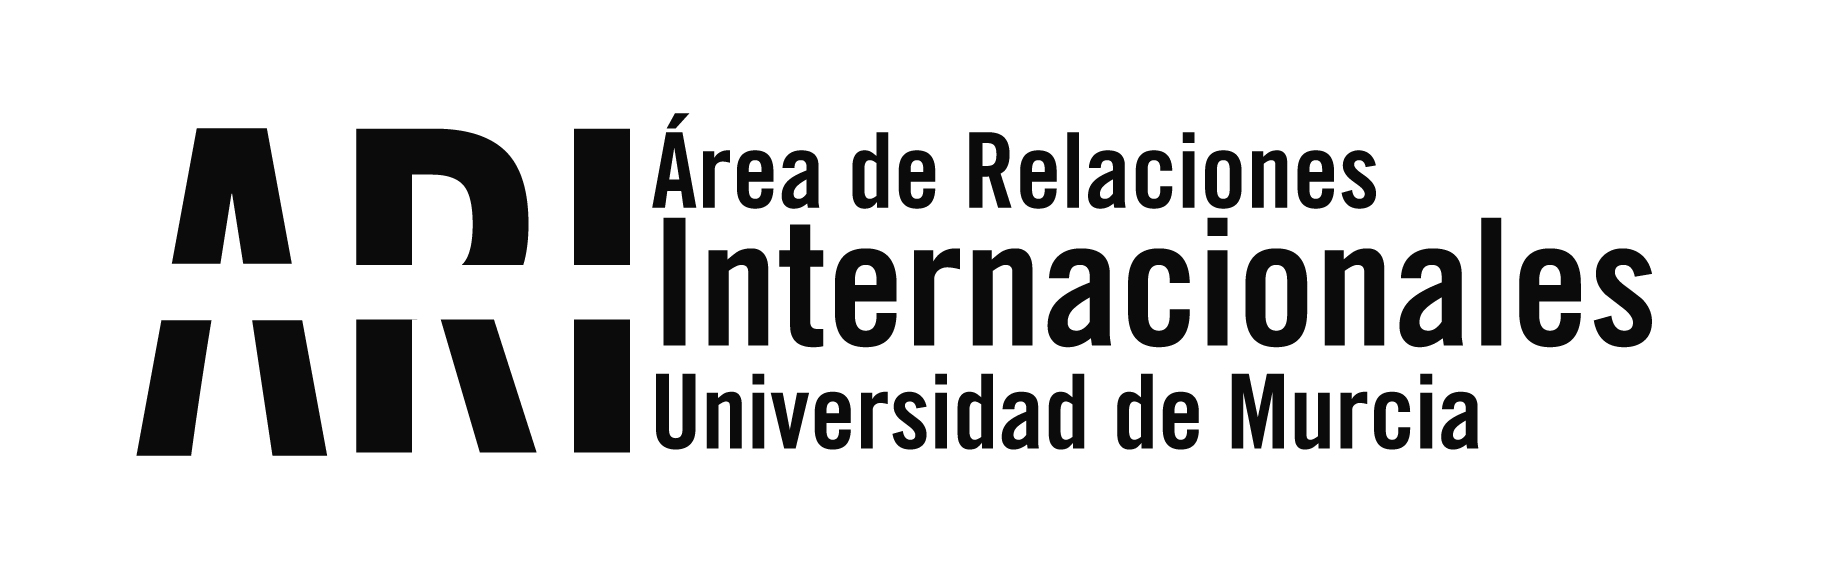 20180625 Internacionalización Universidades - Eventos - Área de Relaciones Internacionales